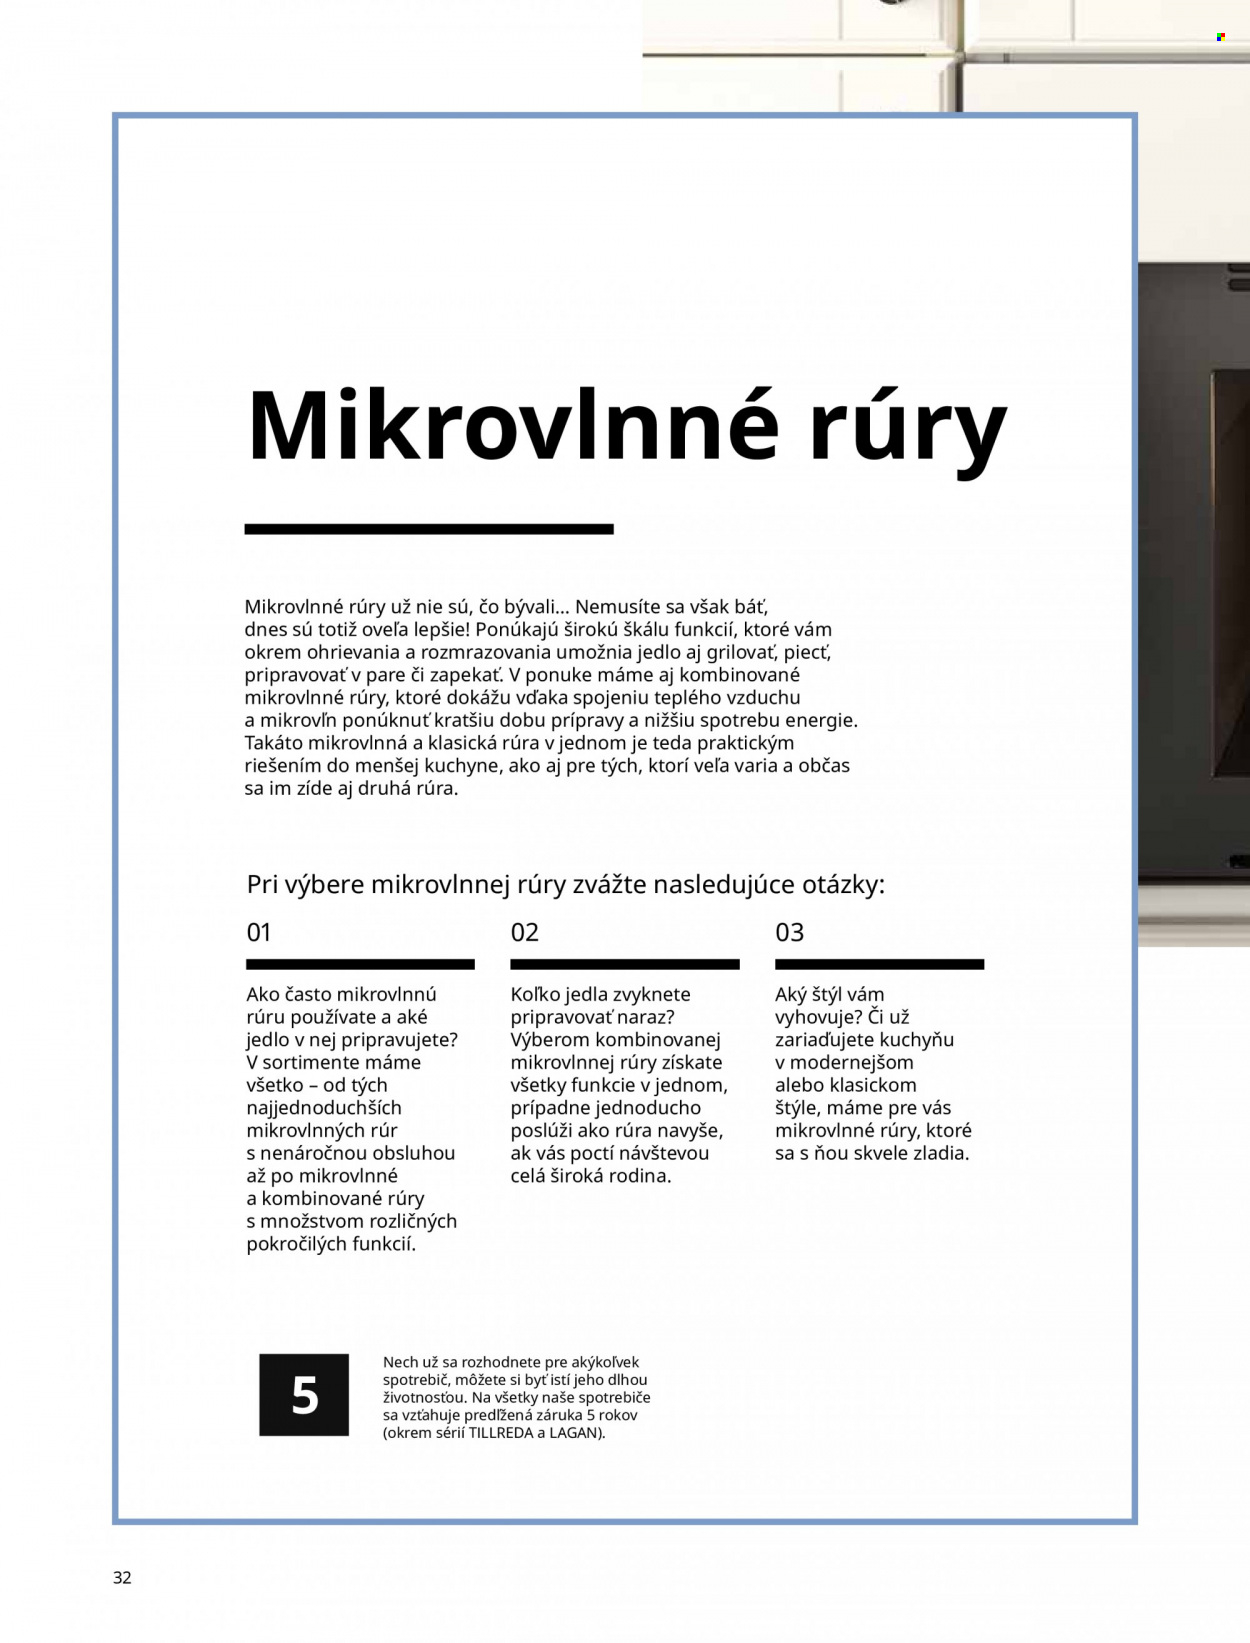 Leták IKEA - Produkty v akcii - mikrovlnná rúra. Strana 32.